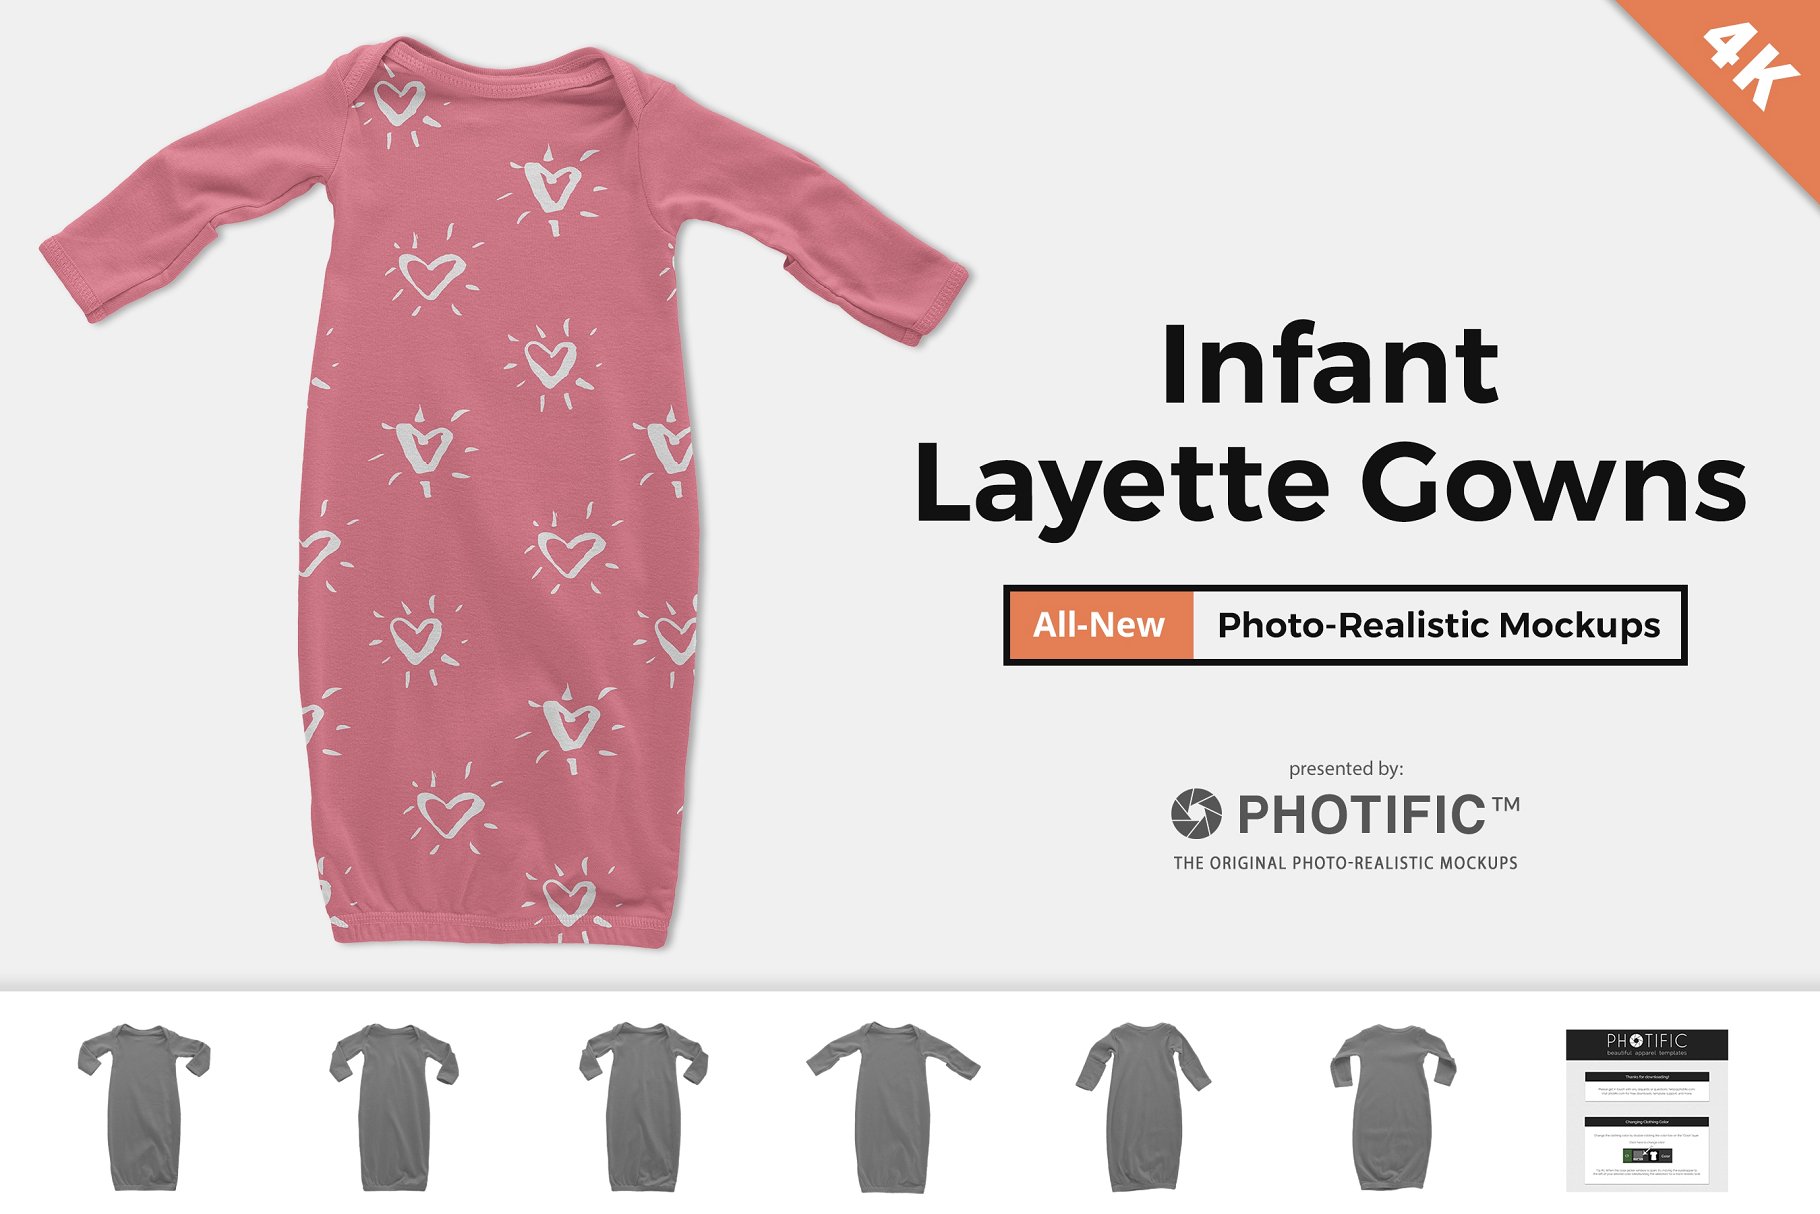 婴儿连体睡衣样机 Infant Layette Gown Mockups插图